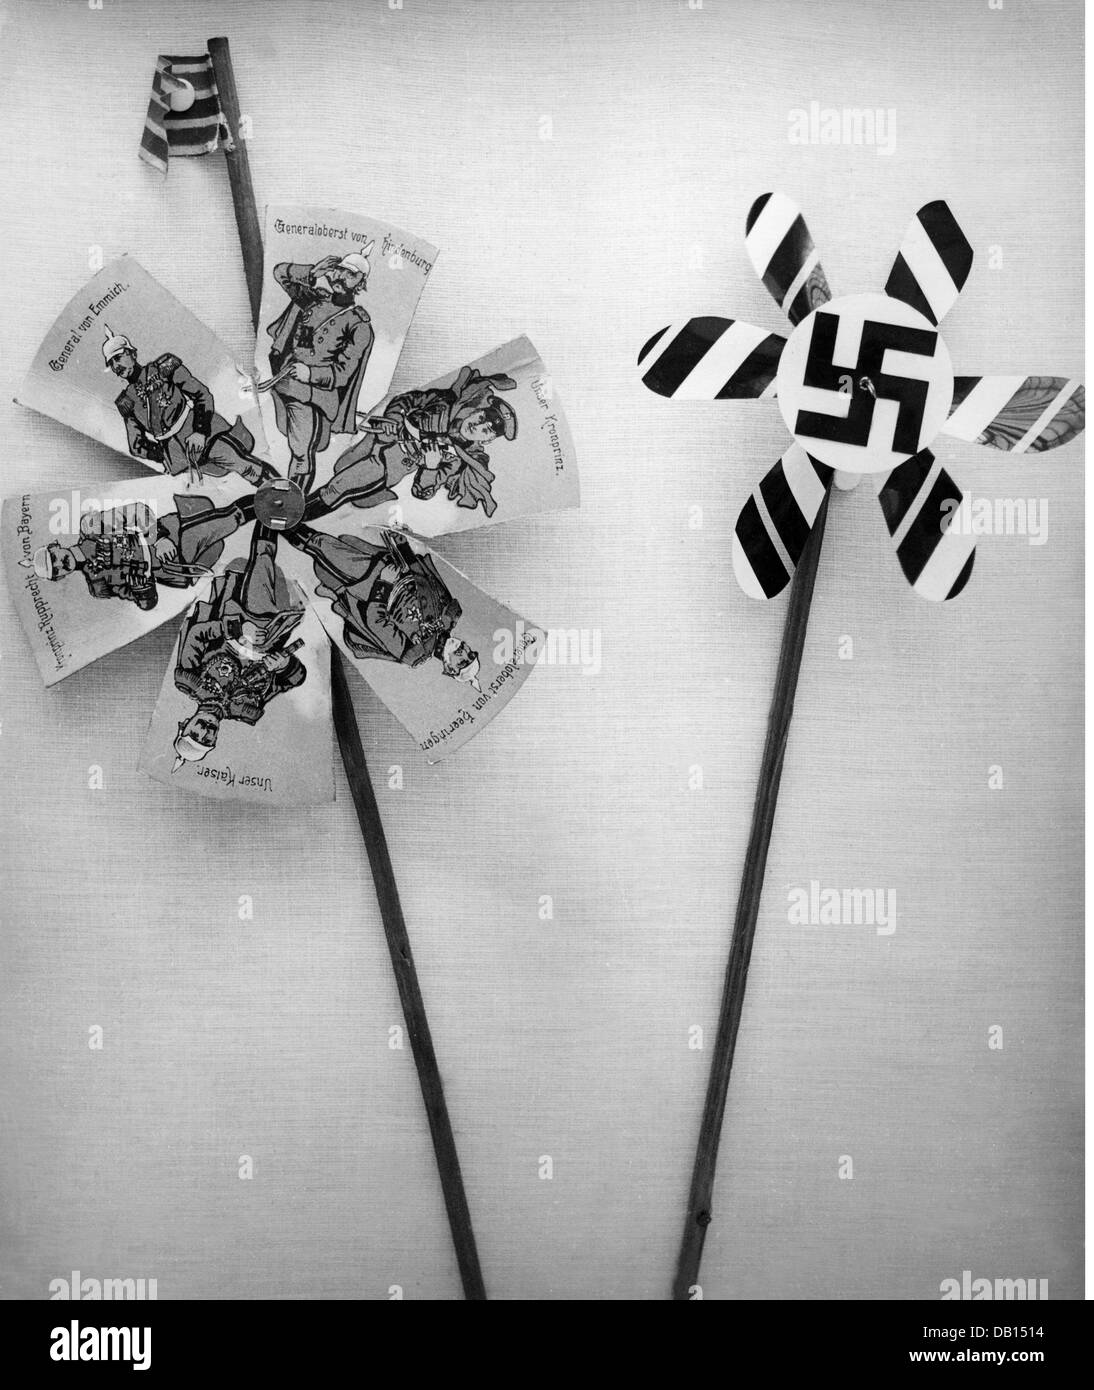 Spielzeug, Windrad, Windrad mit militärischen Führern des Ersten Weltkriegs, 1914, Windrad mit Hakenkreuz, 1930er Jahre, zusätzliche-Rechte-Clearences-nicht vorhanden Stockfoto